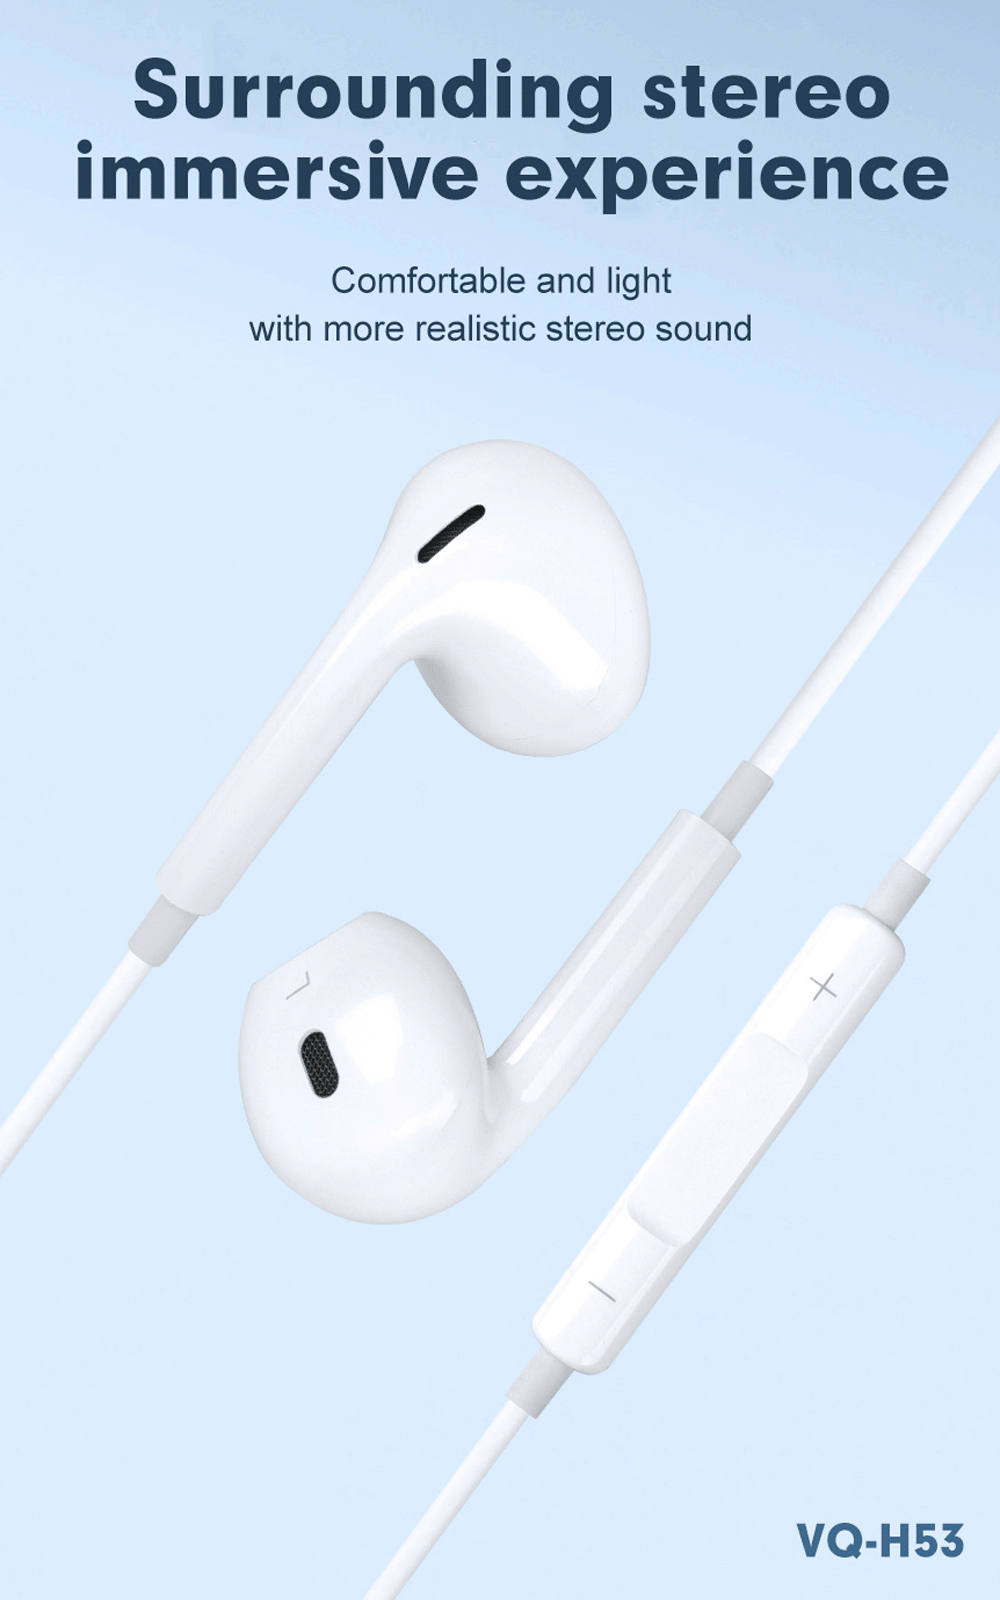 earphones | iphone earphones | earphones wired